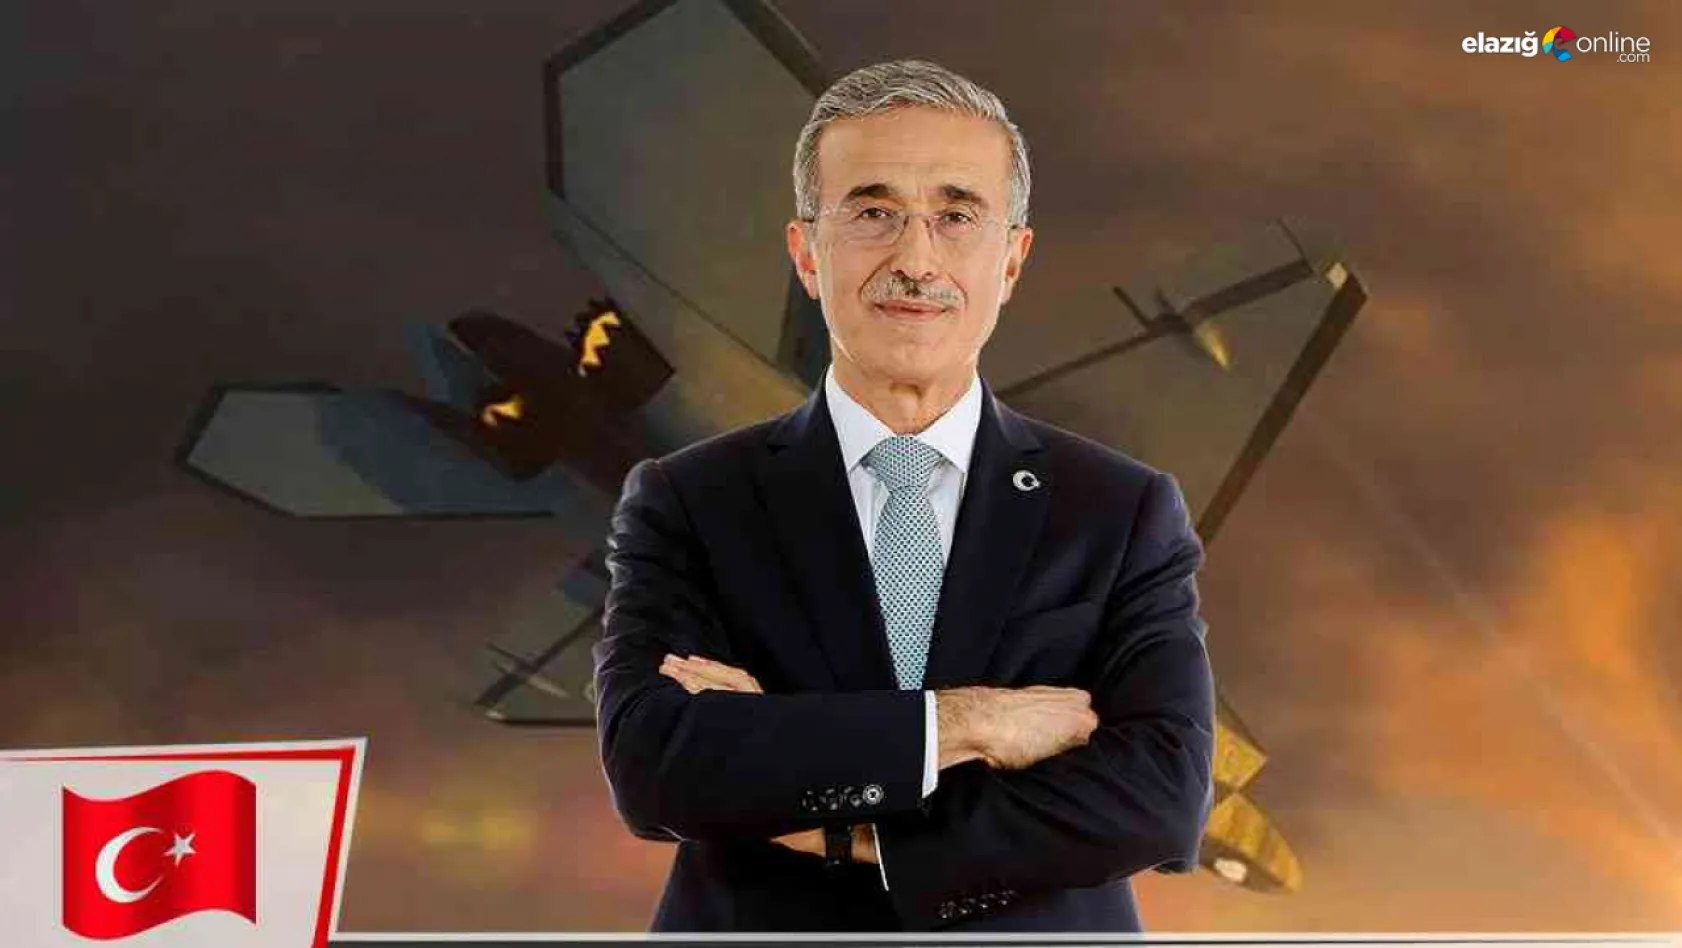 Savunma Sanayii Başkanı hemşehrimiz İsmail Demir Elazığ'a gelecek